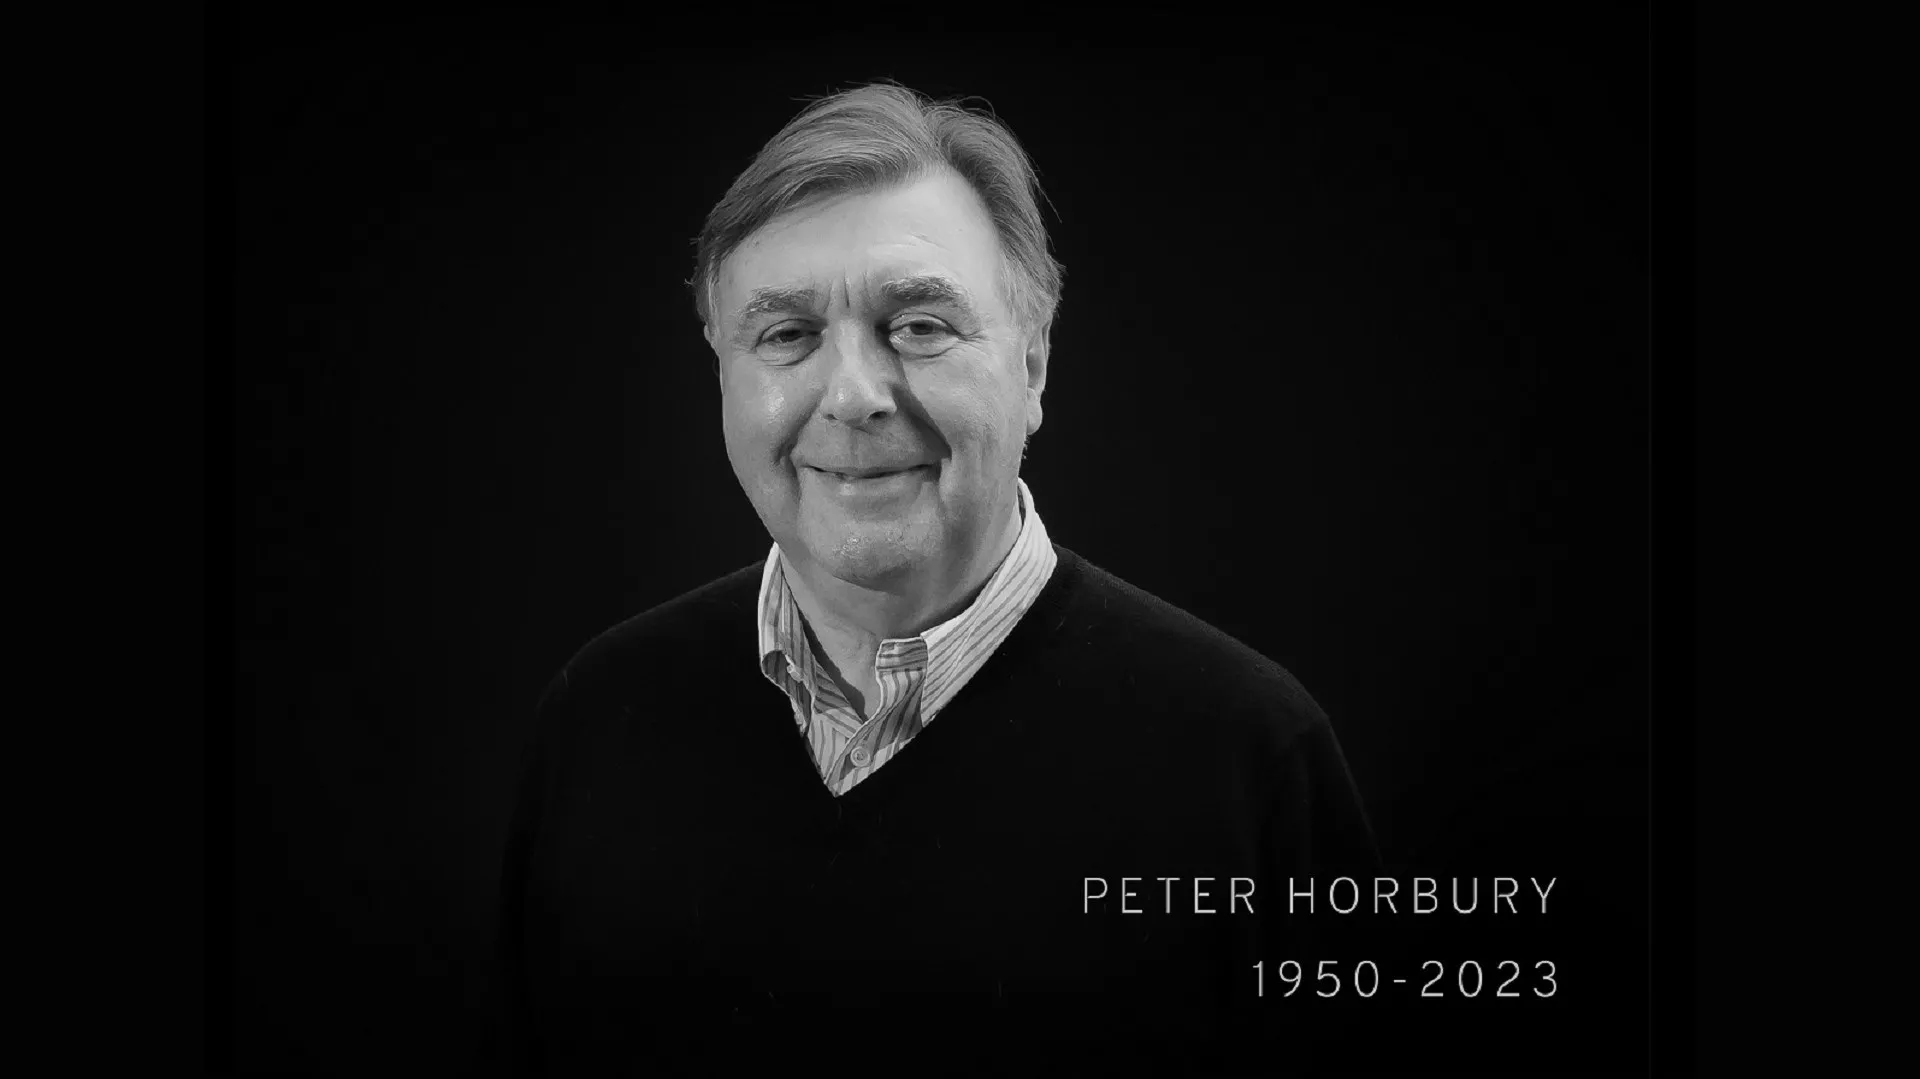 Peter Horbury fallece a los 73 años: su legado permanecerá